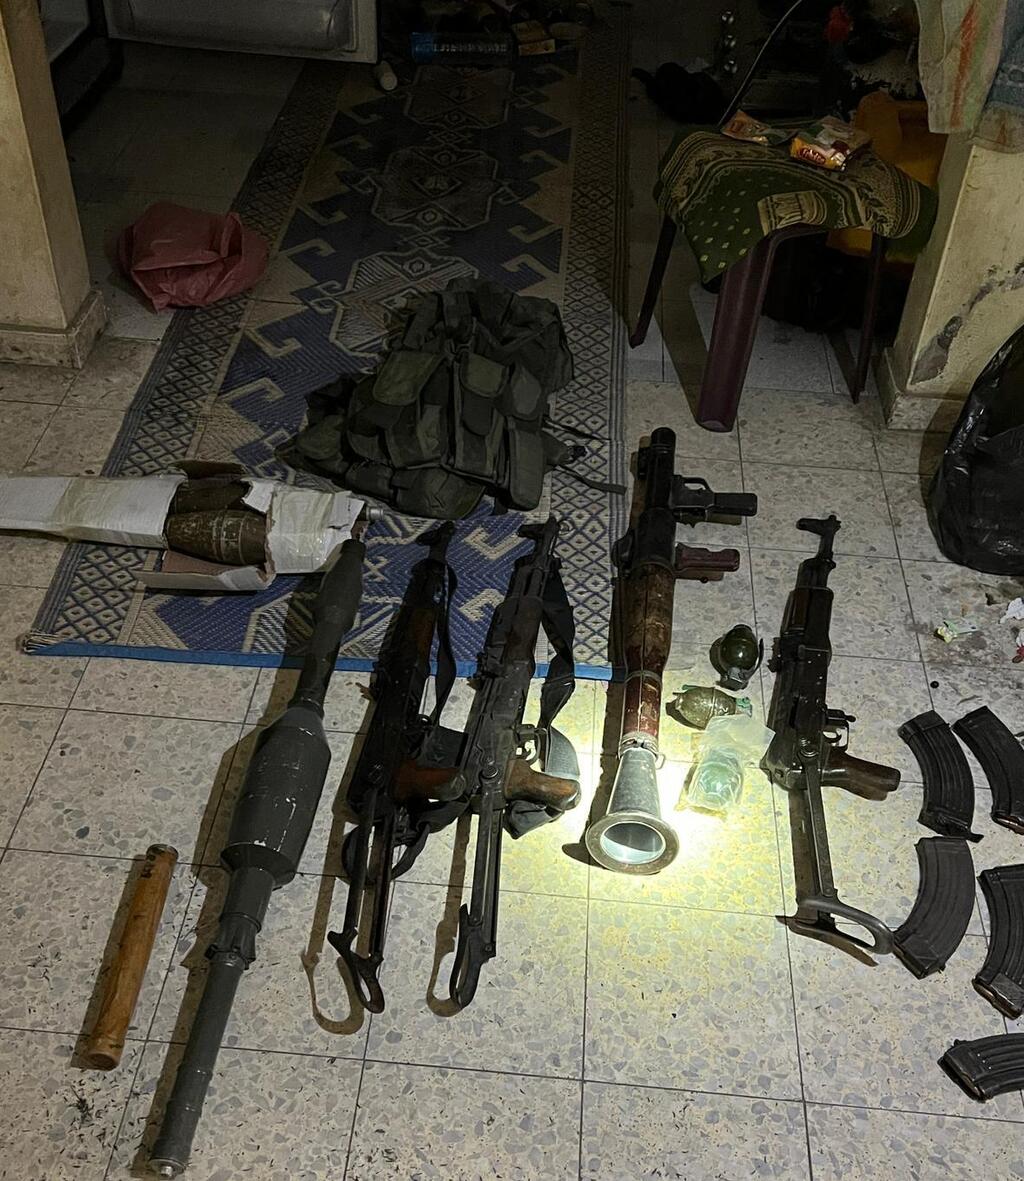 האמל"ח שלוחמי צה"ל מצאו בתוך בית ספר בהתקלות במחבלים בצפון רצועת עזה 